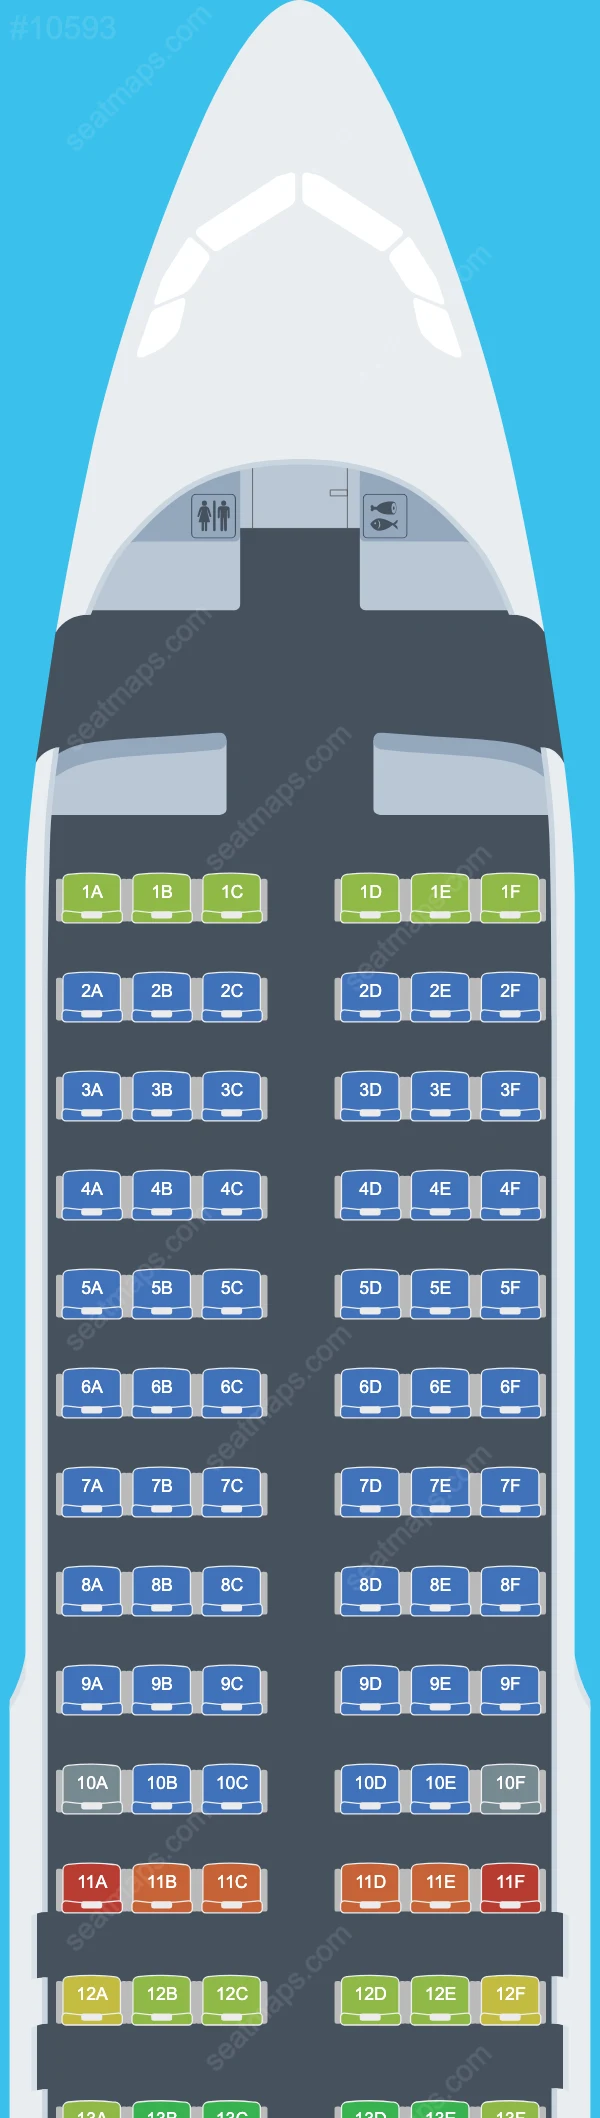 Схема салона Qanot Sharq  Airlines в самолете Airbus A320 A320-200